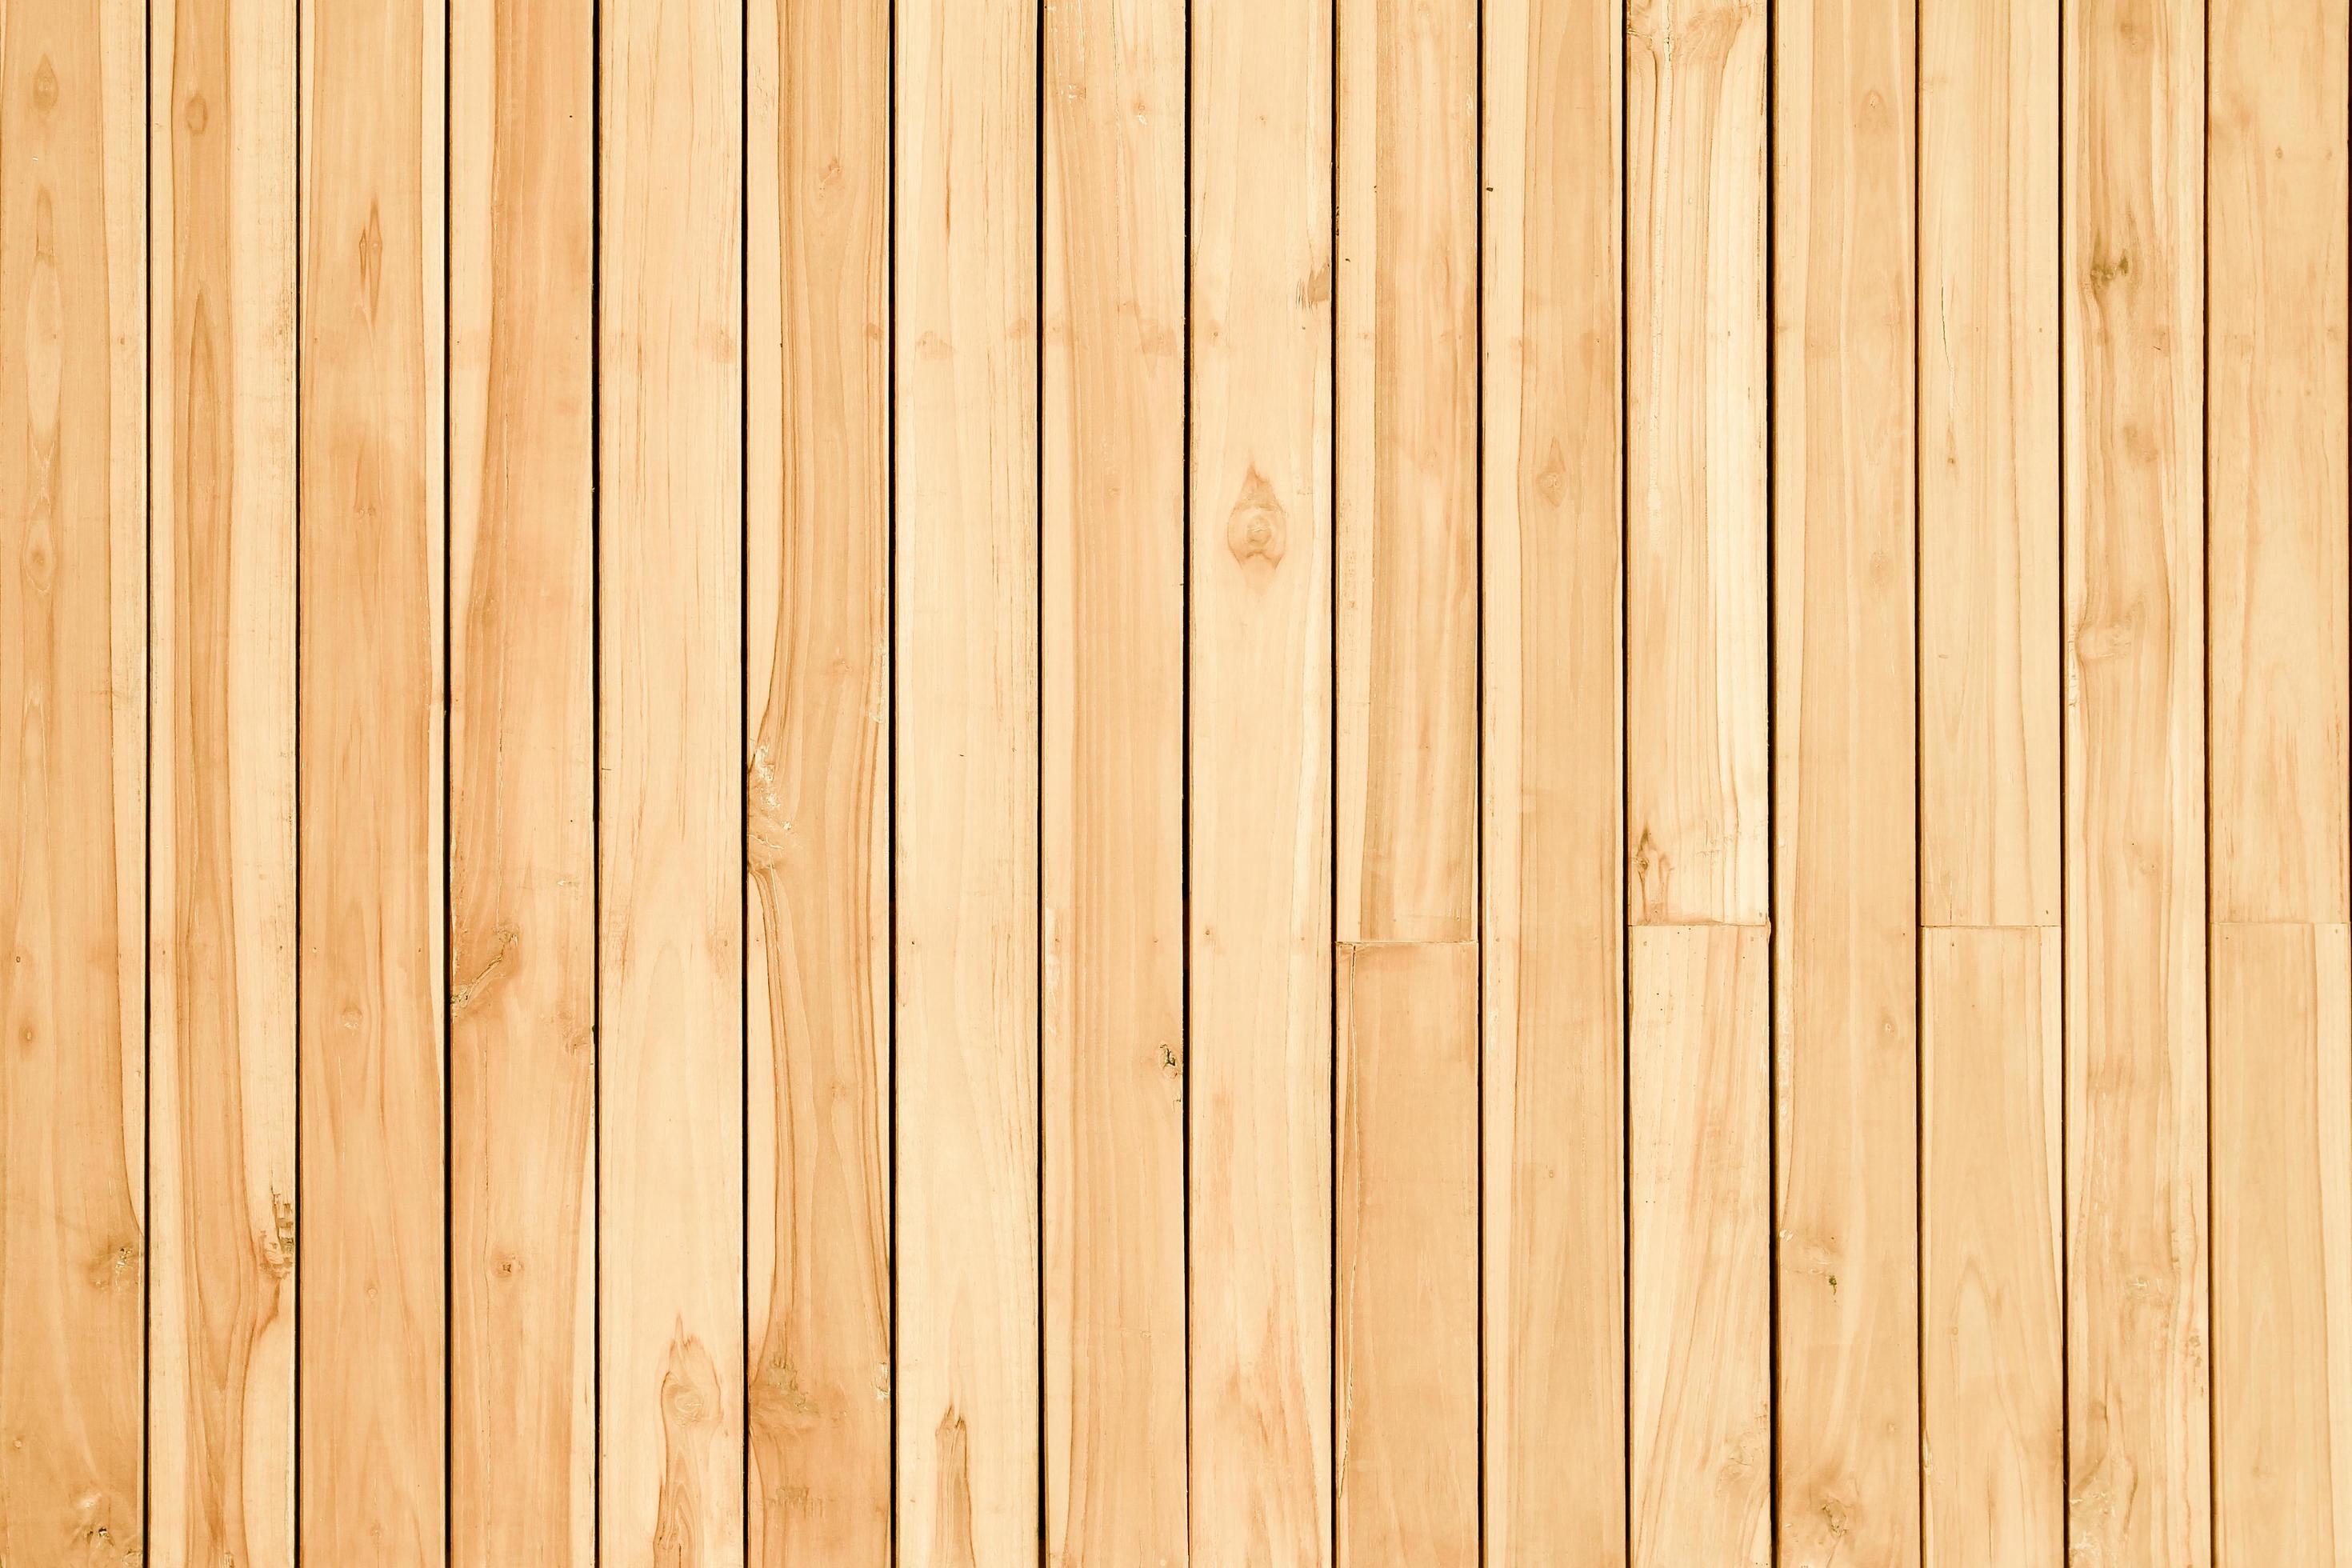 Nền gỗ hoặc tường gỗ với màu sắc và vân gỗ tự nhiên sẽ mang đến cho căn nhà của bạn vẻ đẹp bình dị mà còn rất sang trọng. Hãy để mình bị choáng ngợp với những hình ảnh tuyệt đẹp của nền gỗ hoặc tường gỗ.